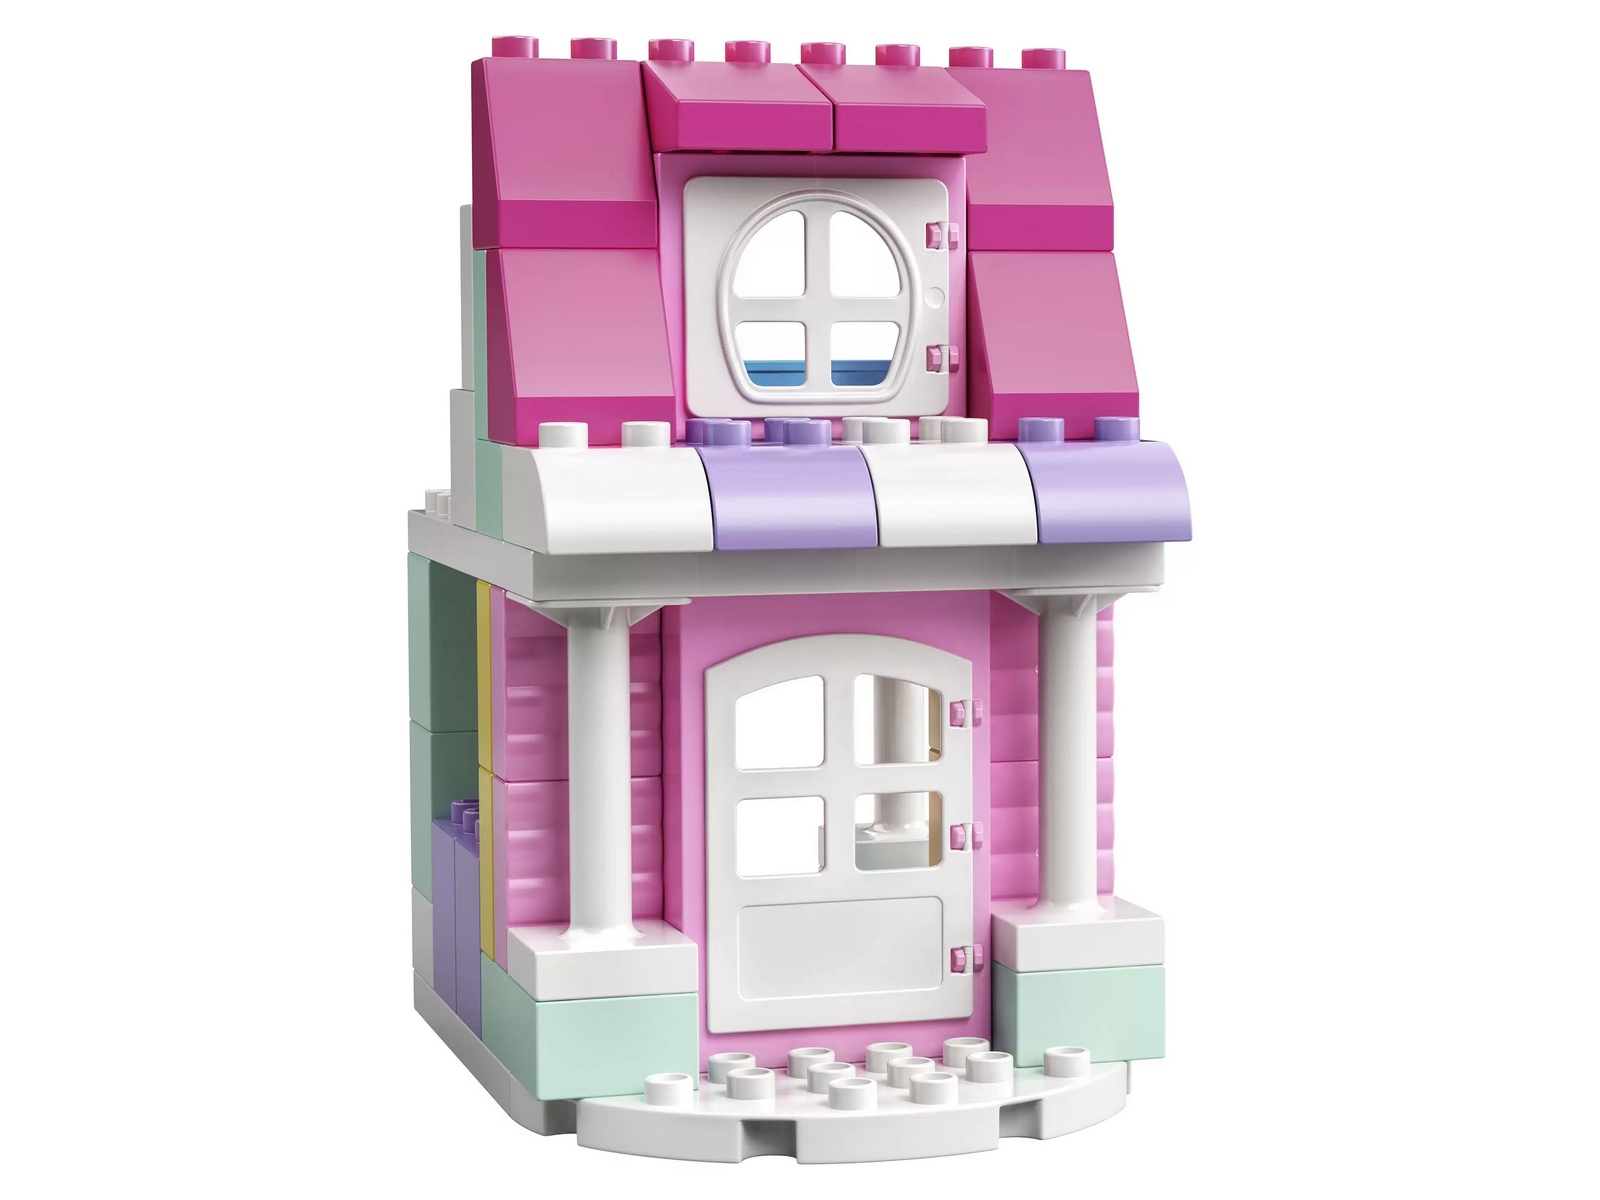 Конструктор LEGO Duplo «Дом и кафе Минни» 10942 / 91 деталь